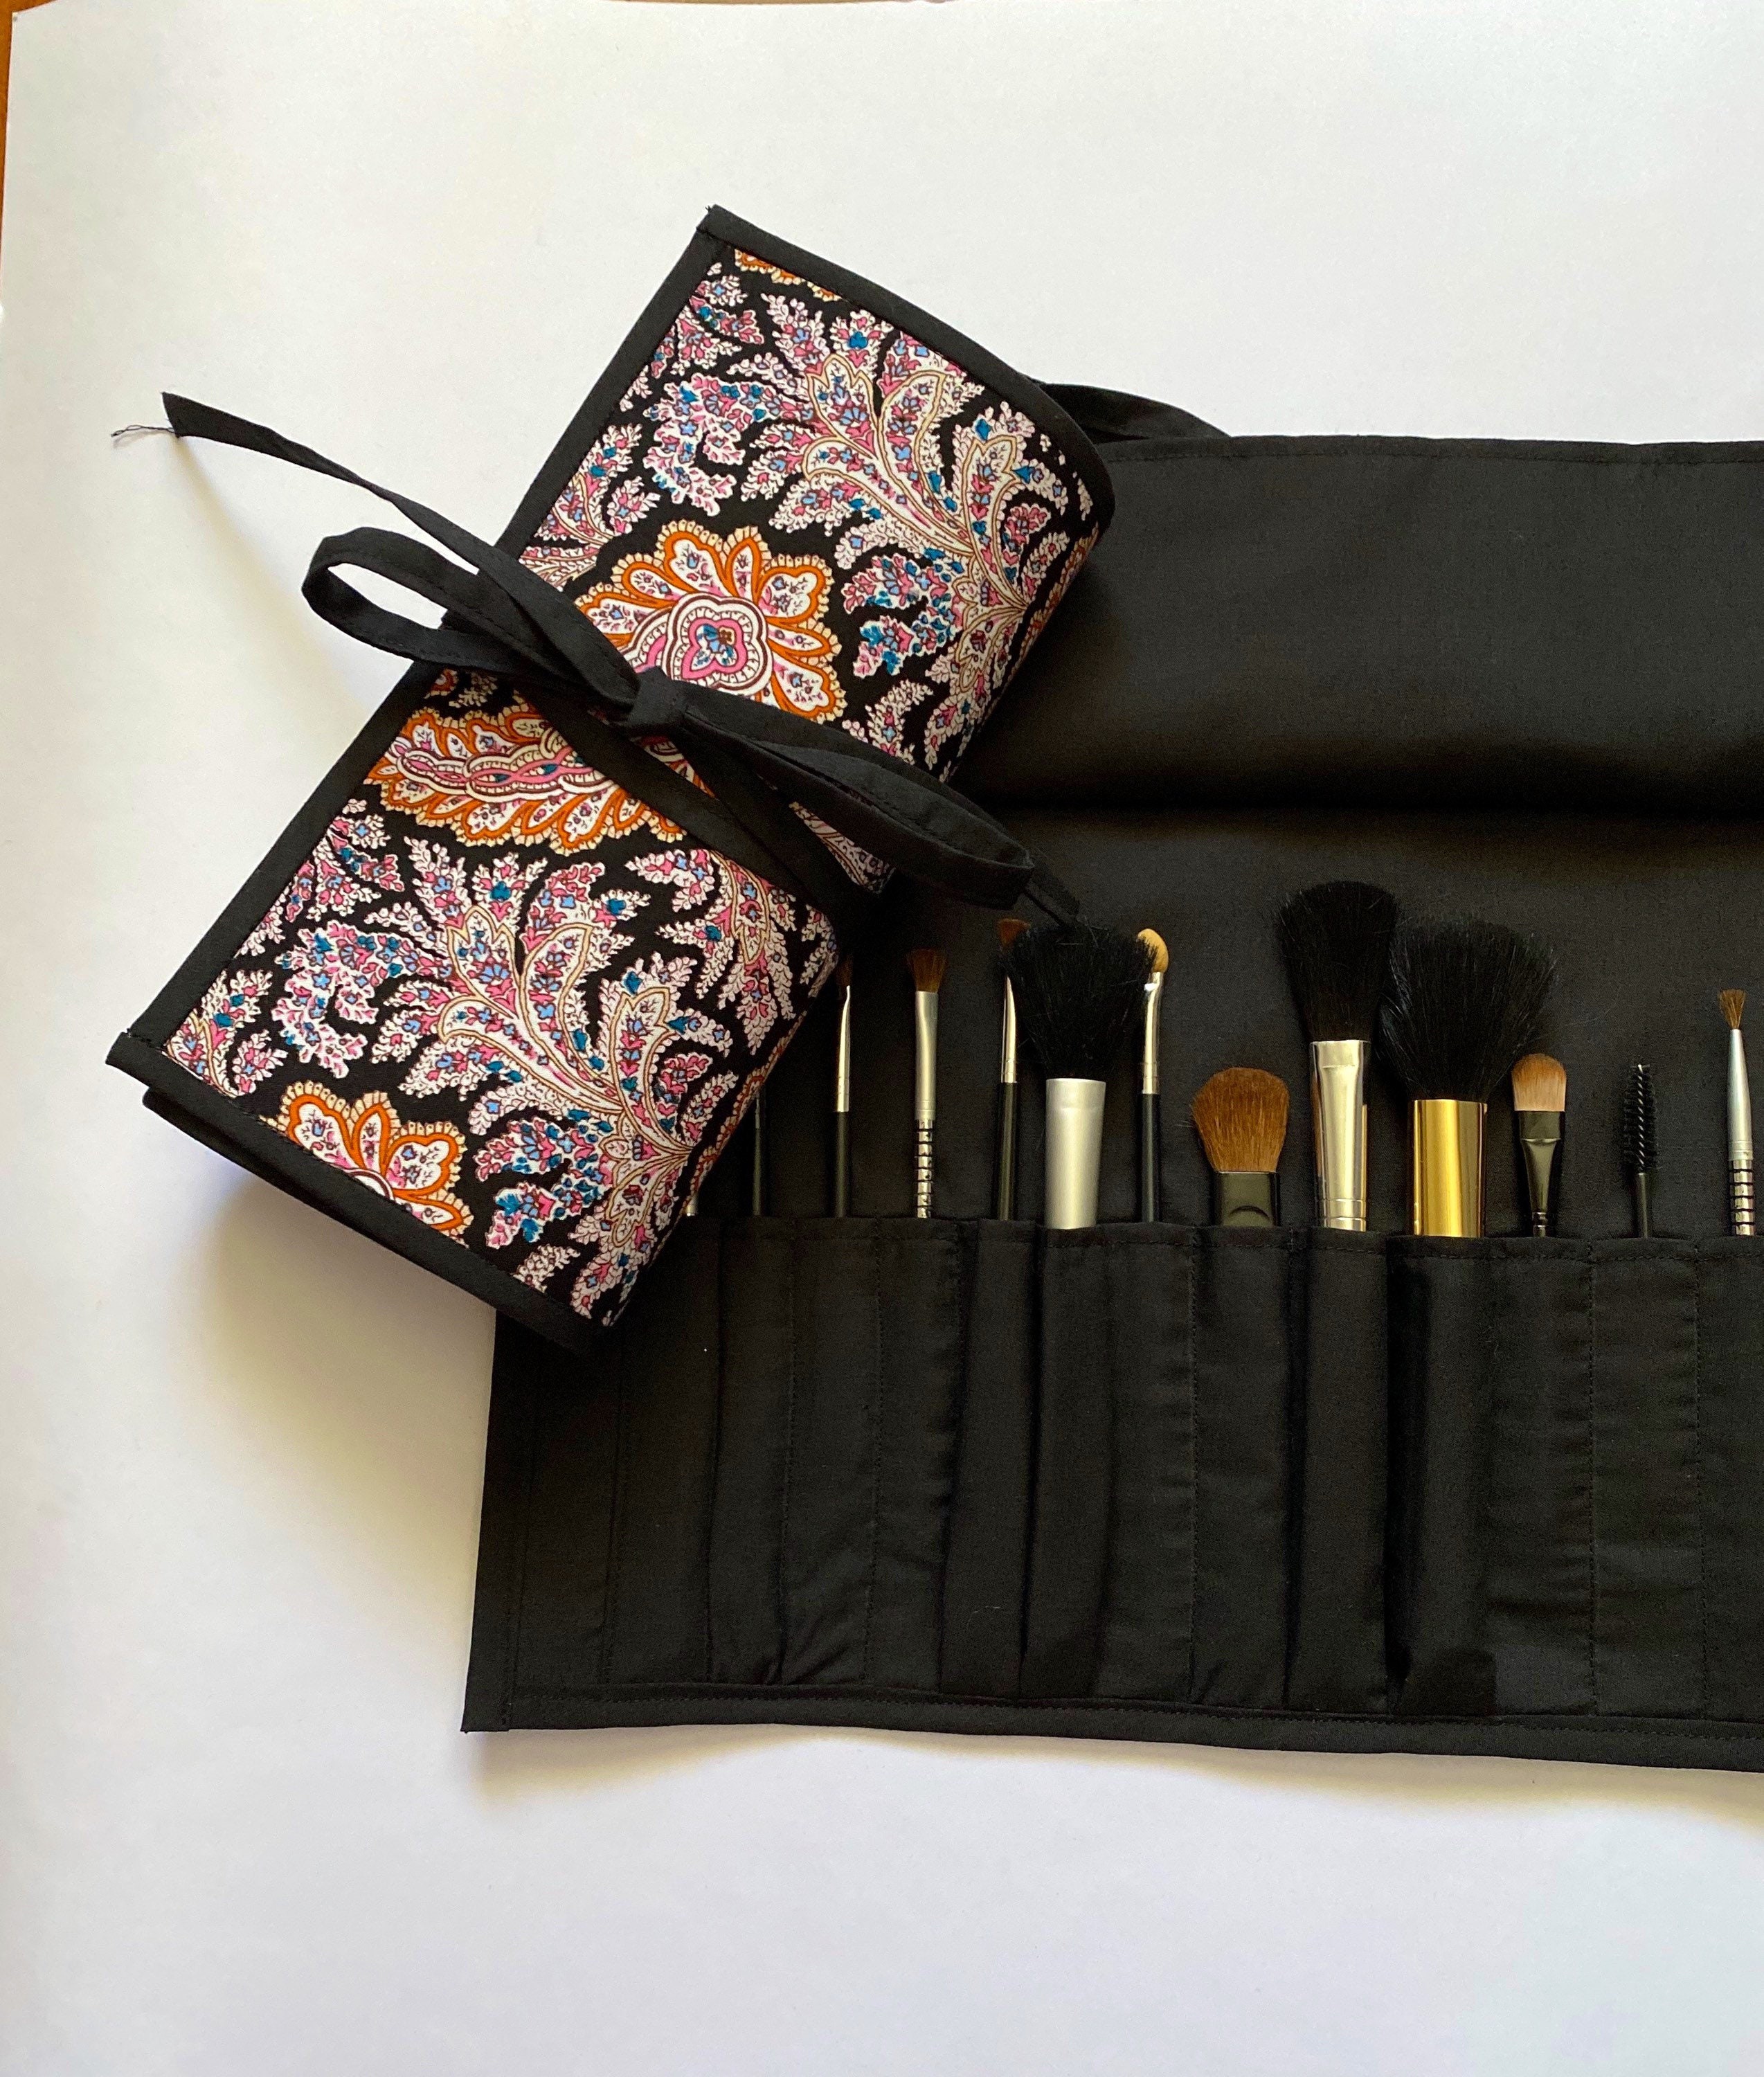 Makeup Brush Roll, Makeup Brush Holder, Travel Makeup Brush Case, Travel  Make up Brush Bag, Cosmetic Brush Roll up Aquarelle Floral 